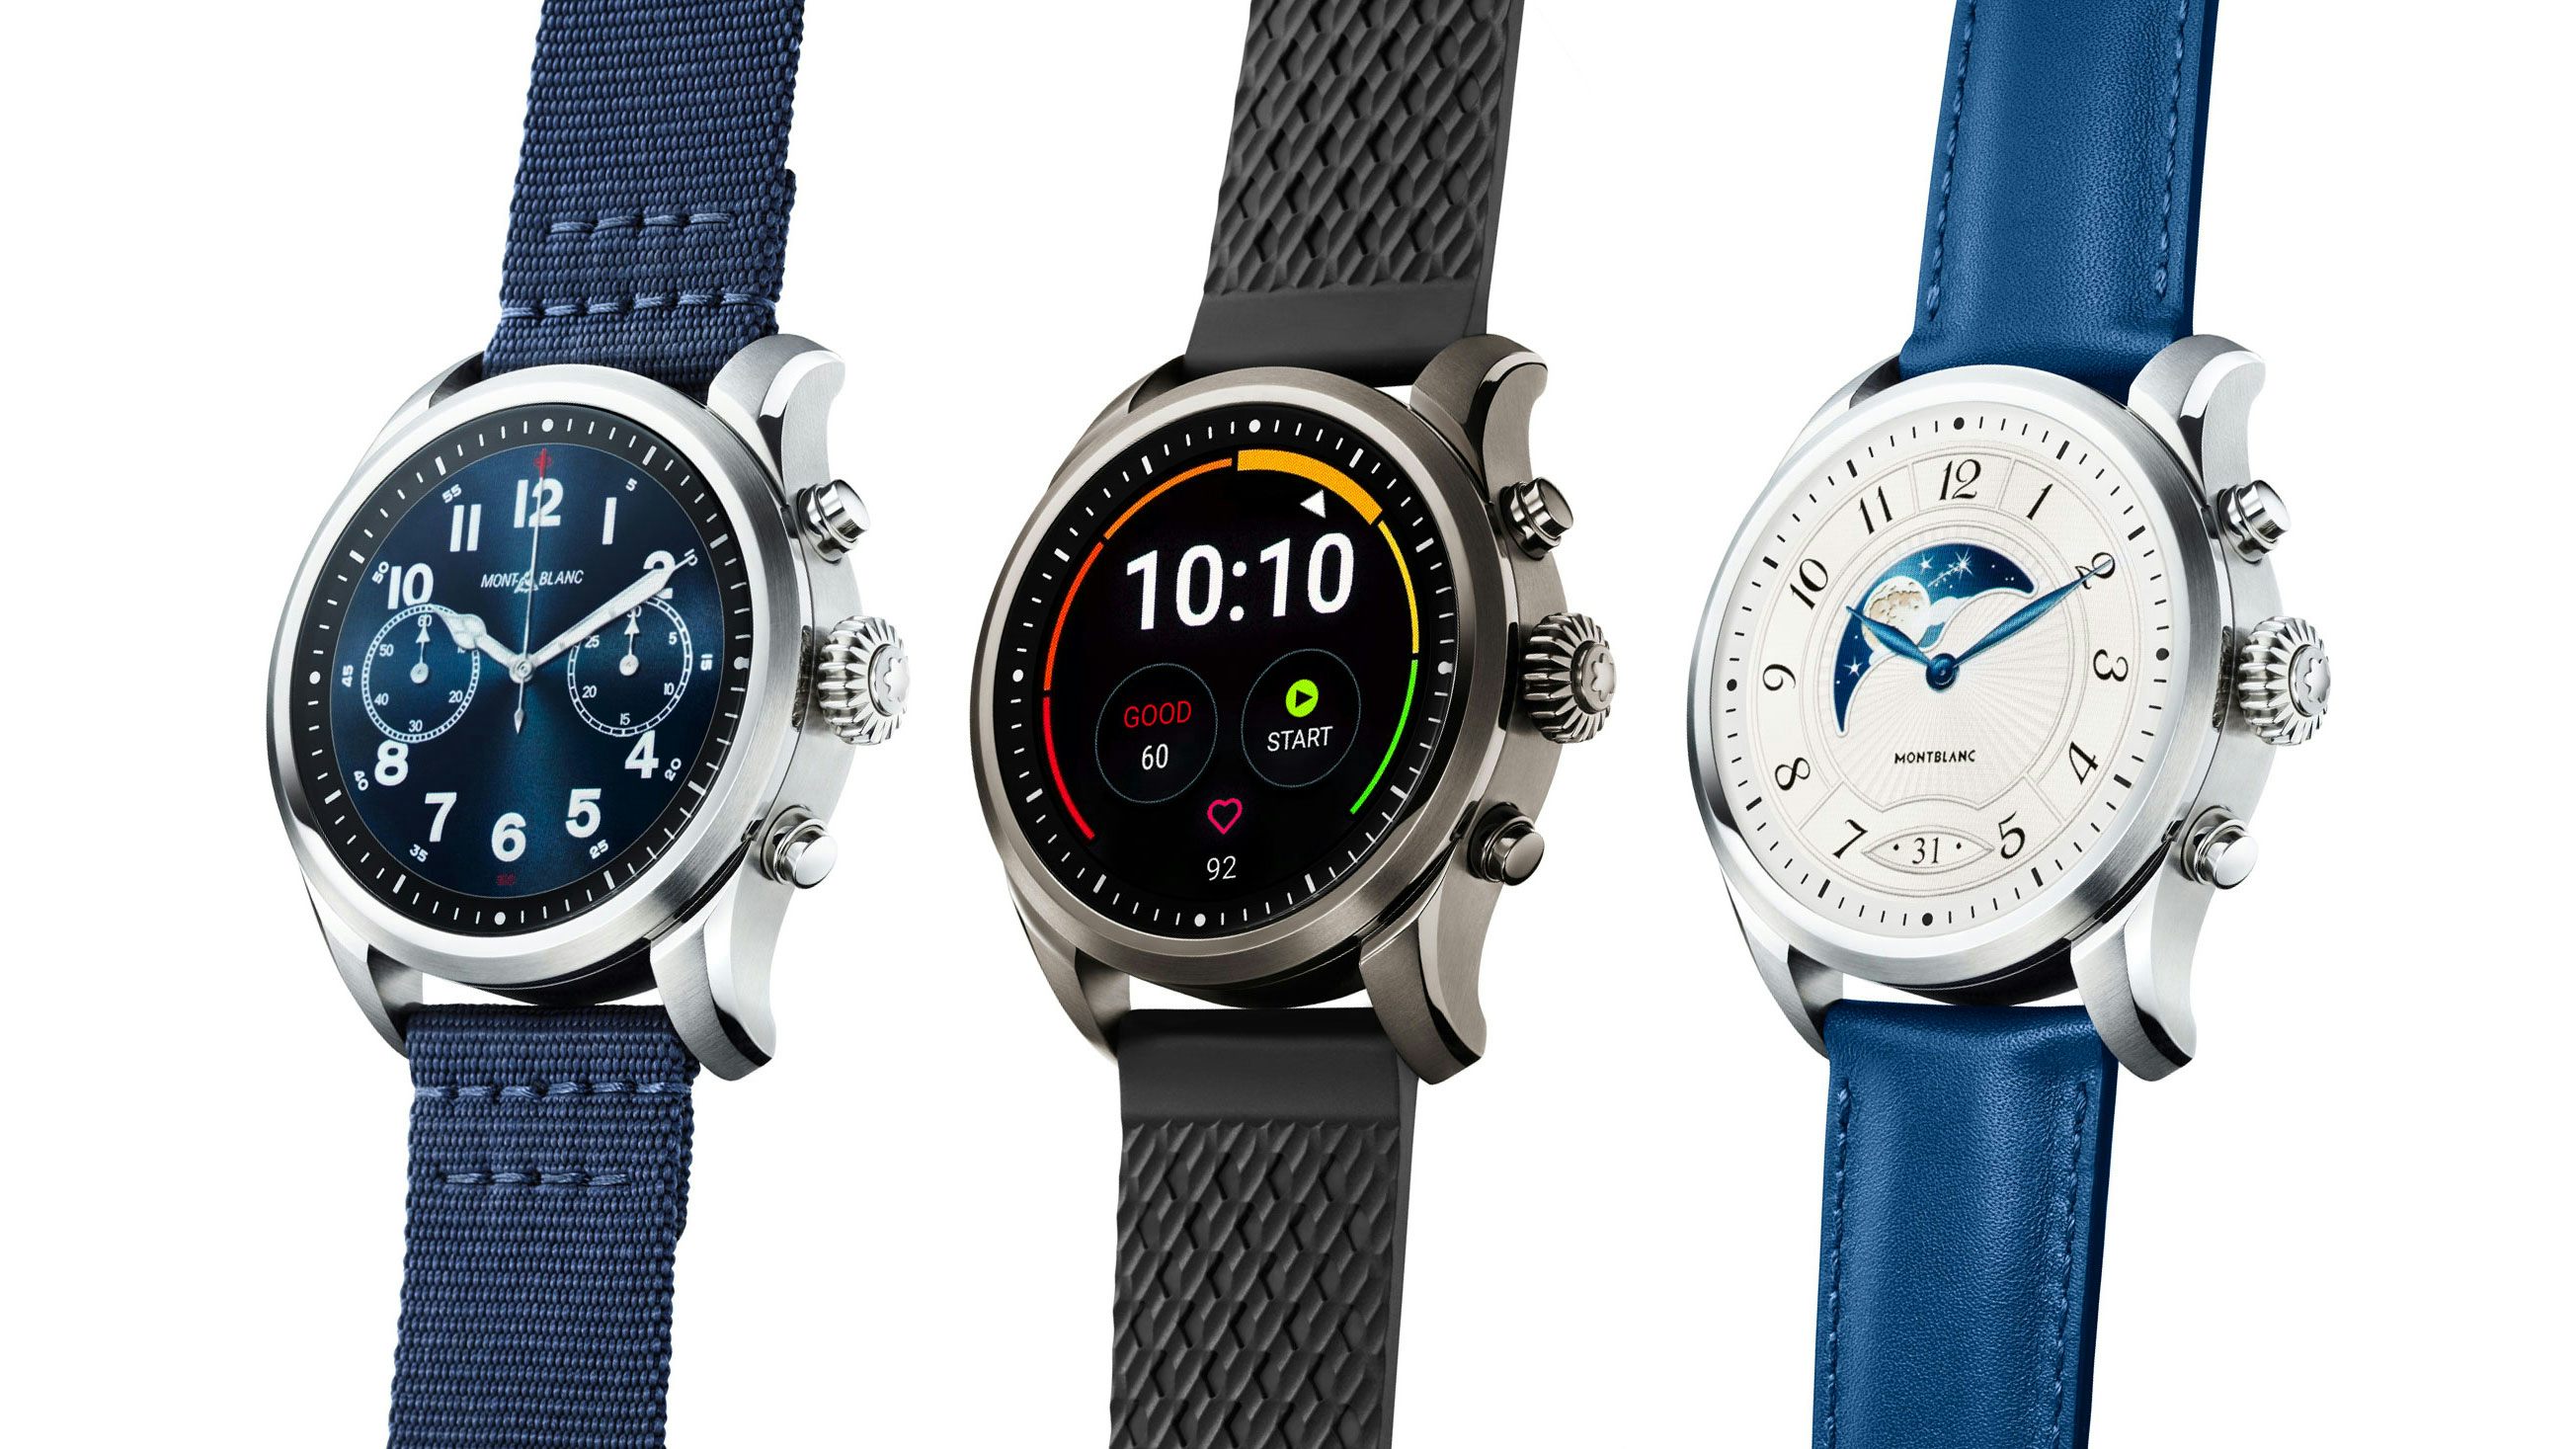 Summit 2+ Luxury LTE Smartwatch – Montblanc® US